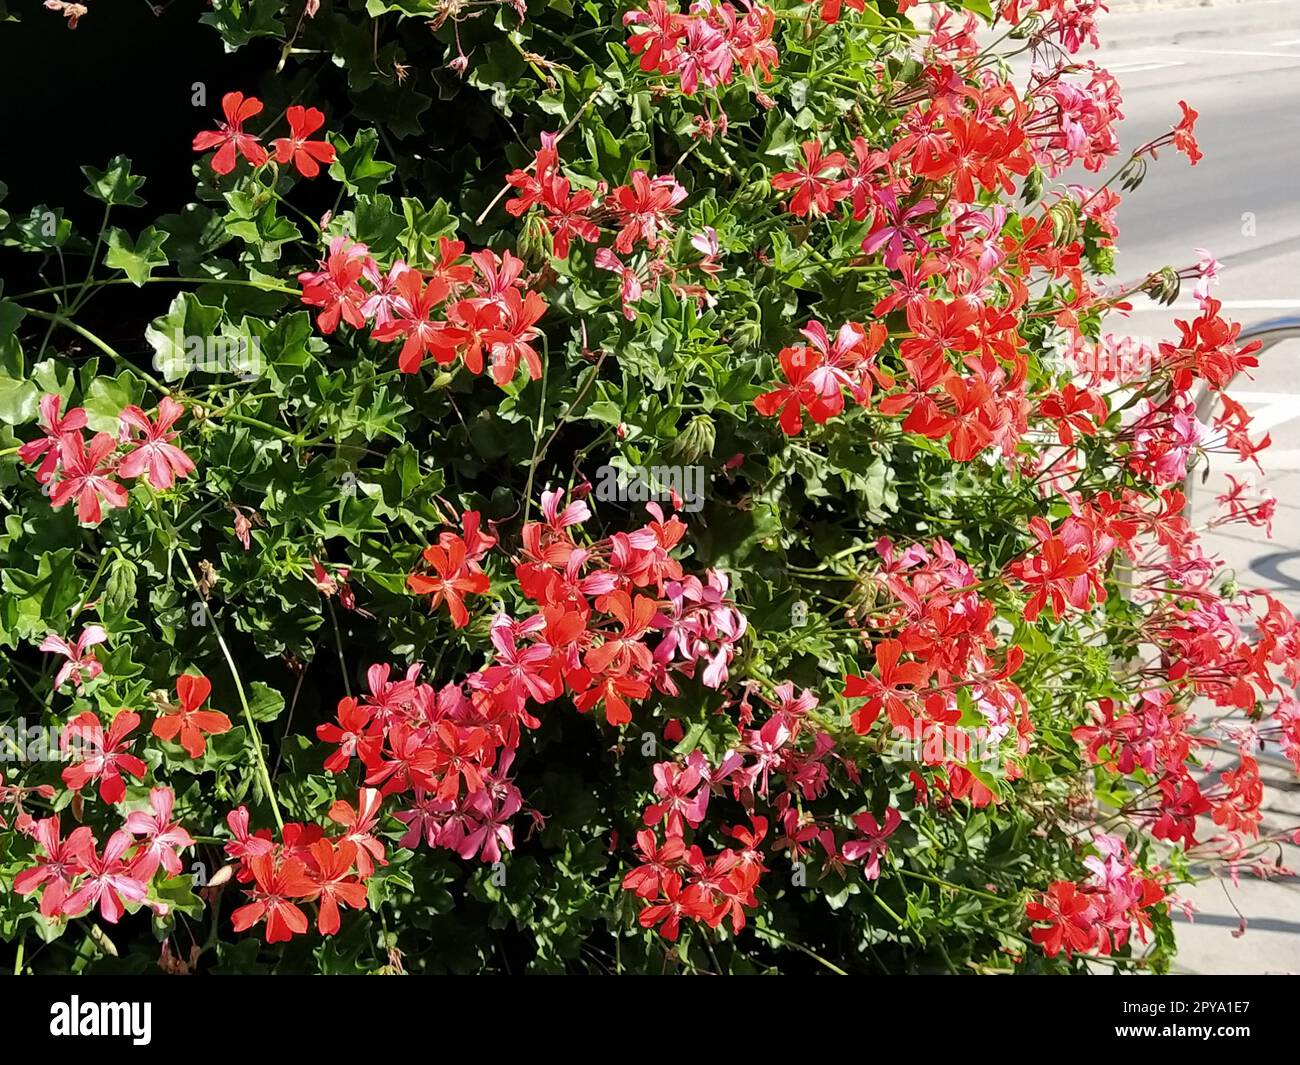 Pelargonium peltatum. Géraniums de lierre en fleurs rouge, rose et magenta dans un parc de la ville. Aménagement paysager vertical d'un jardin, d'une cour ou d'une rue de la ville Banque D'Images